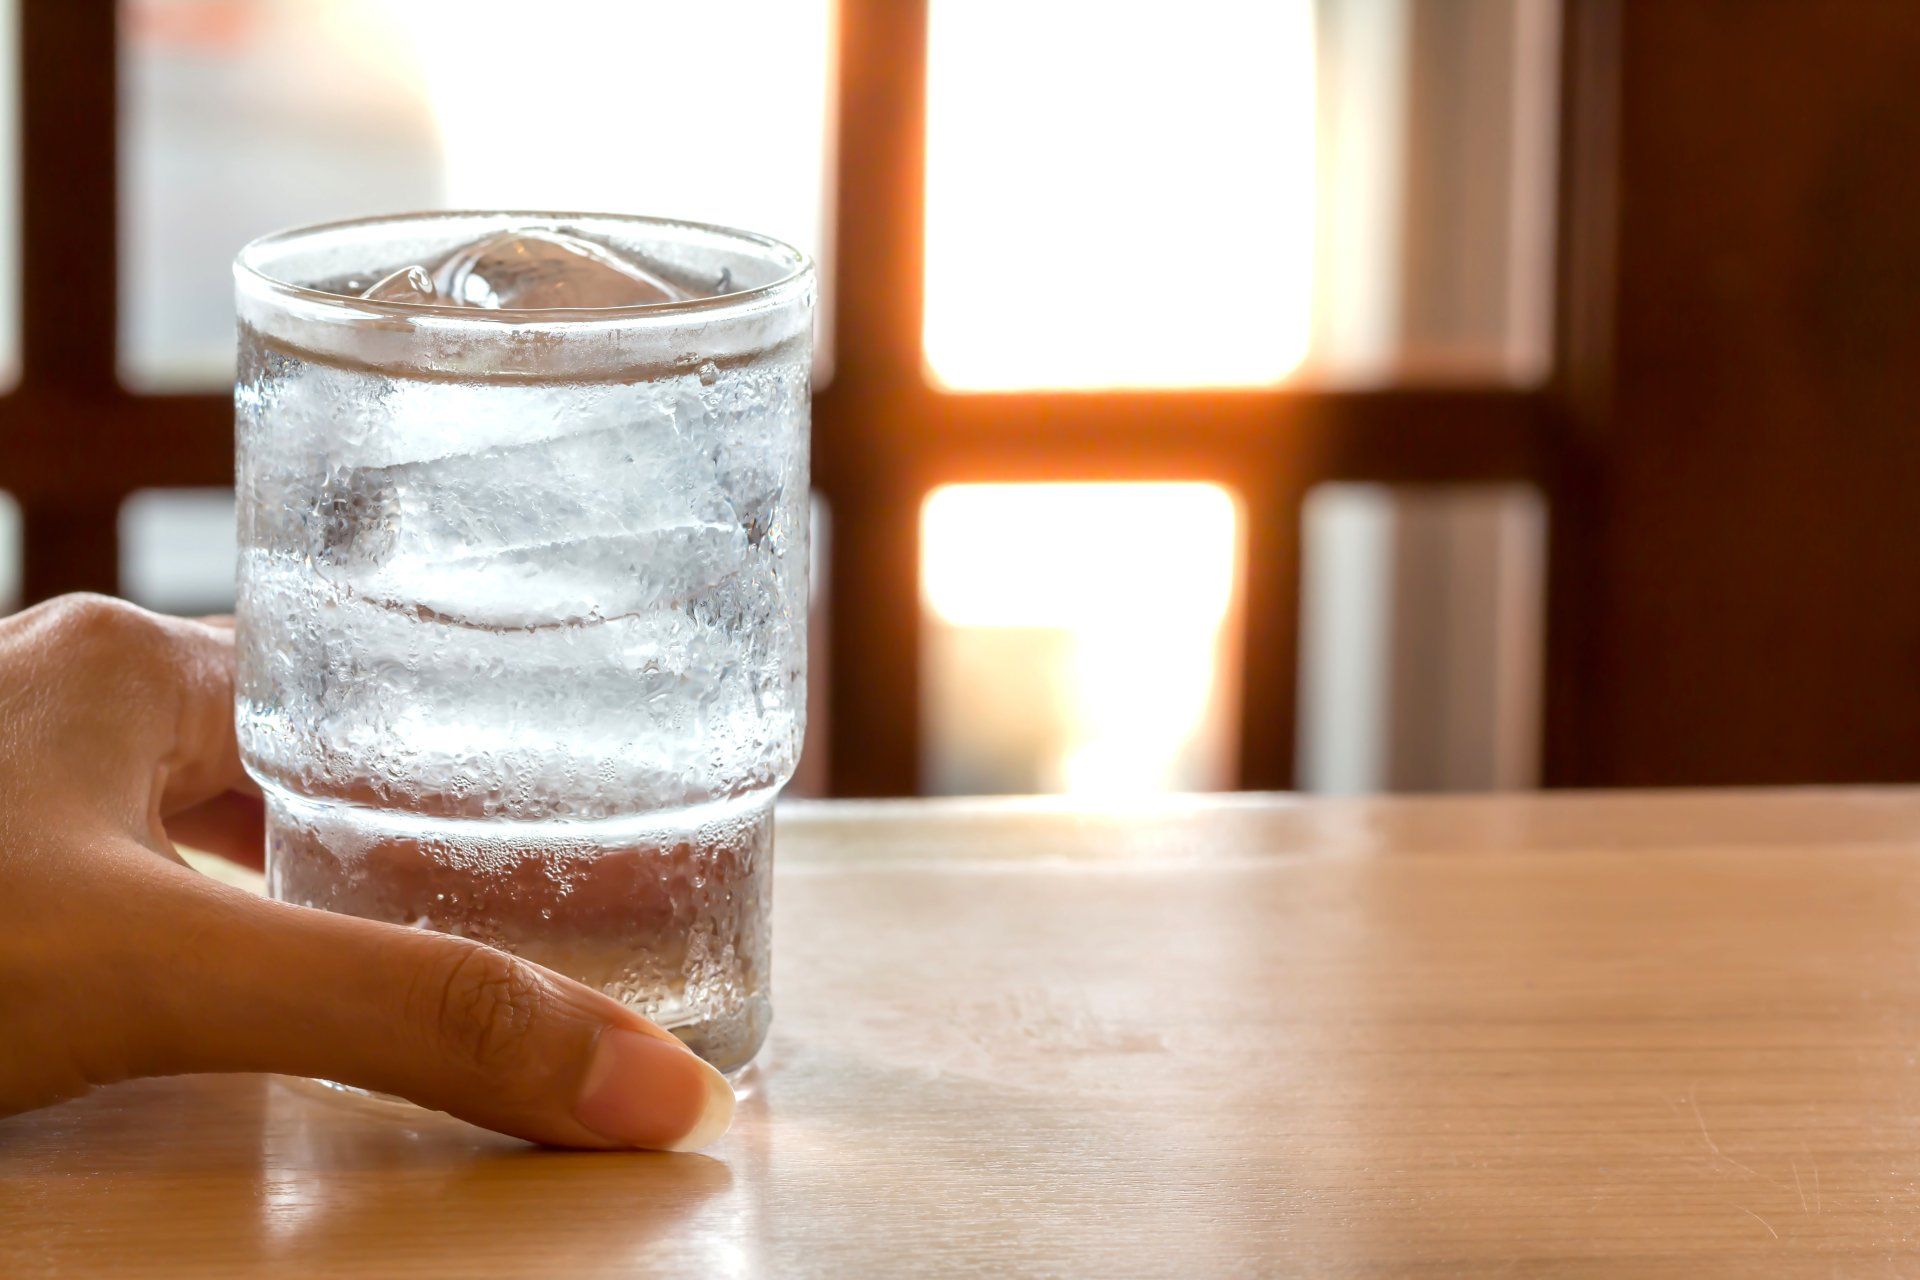 Mùa hè uống nước lạnh có hại không? 2 loại nước rẻ tiền giúp giải nhiệt, trẻ tế bào - Ảnh 1.